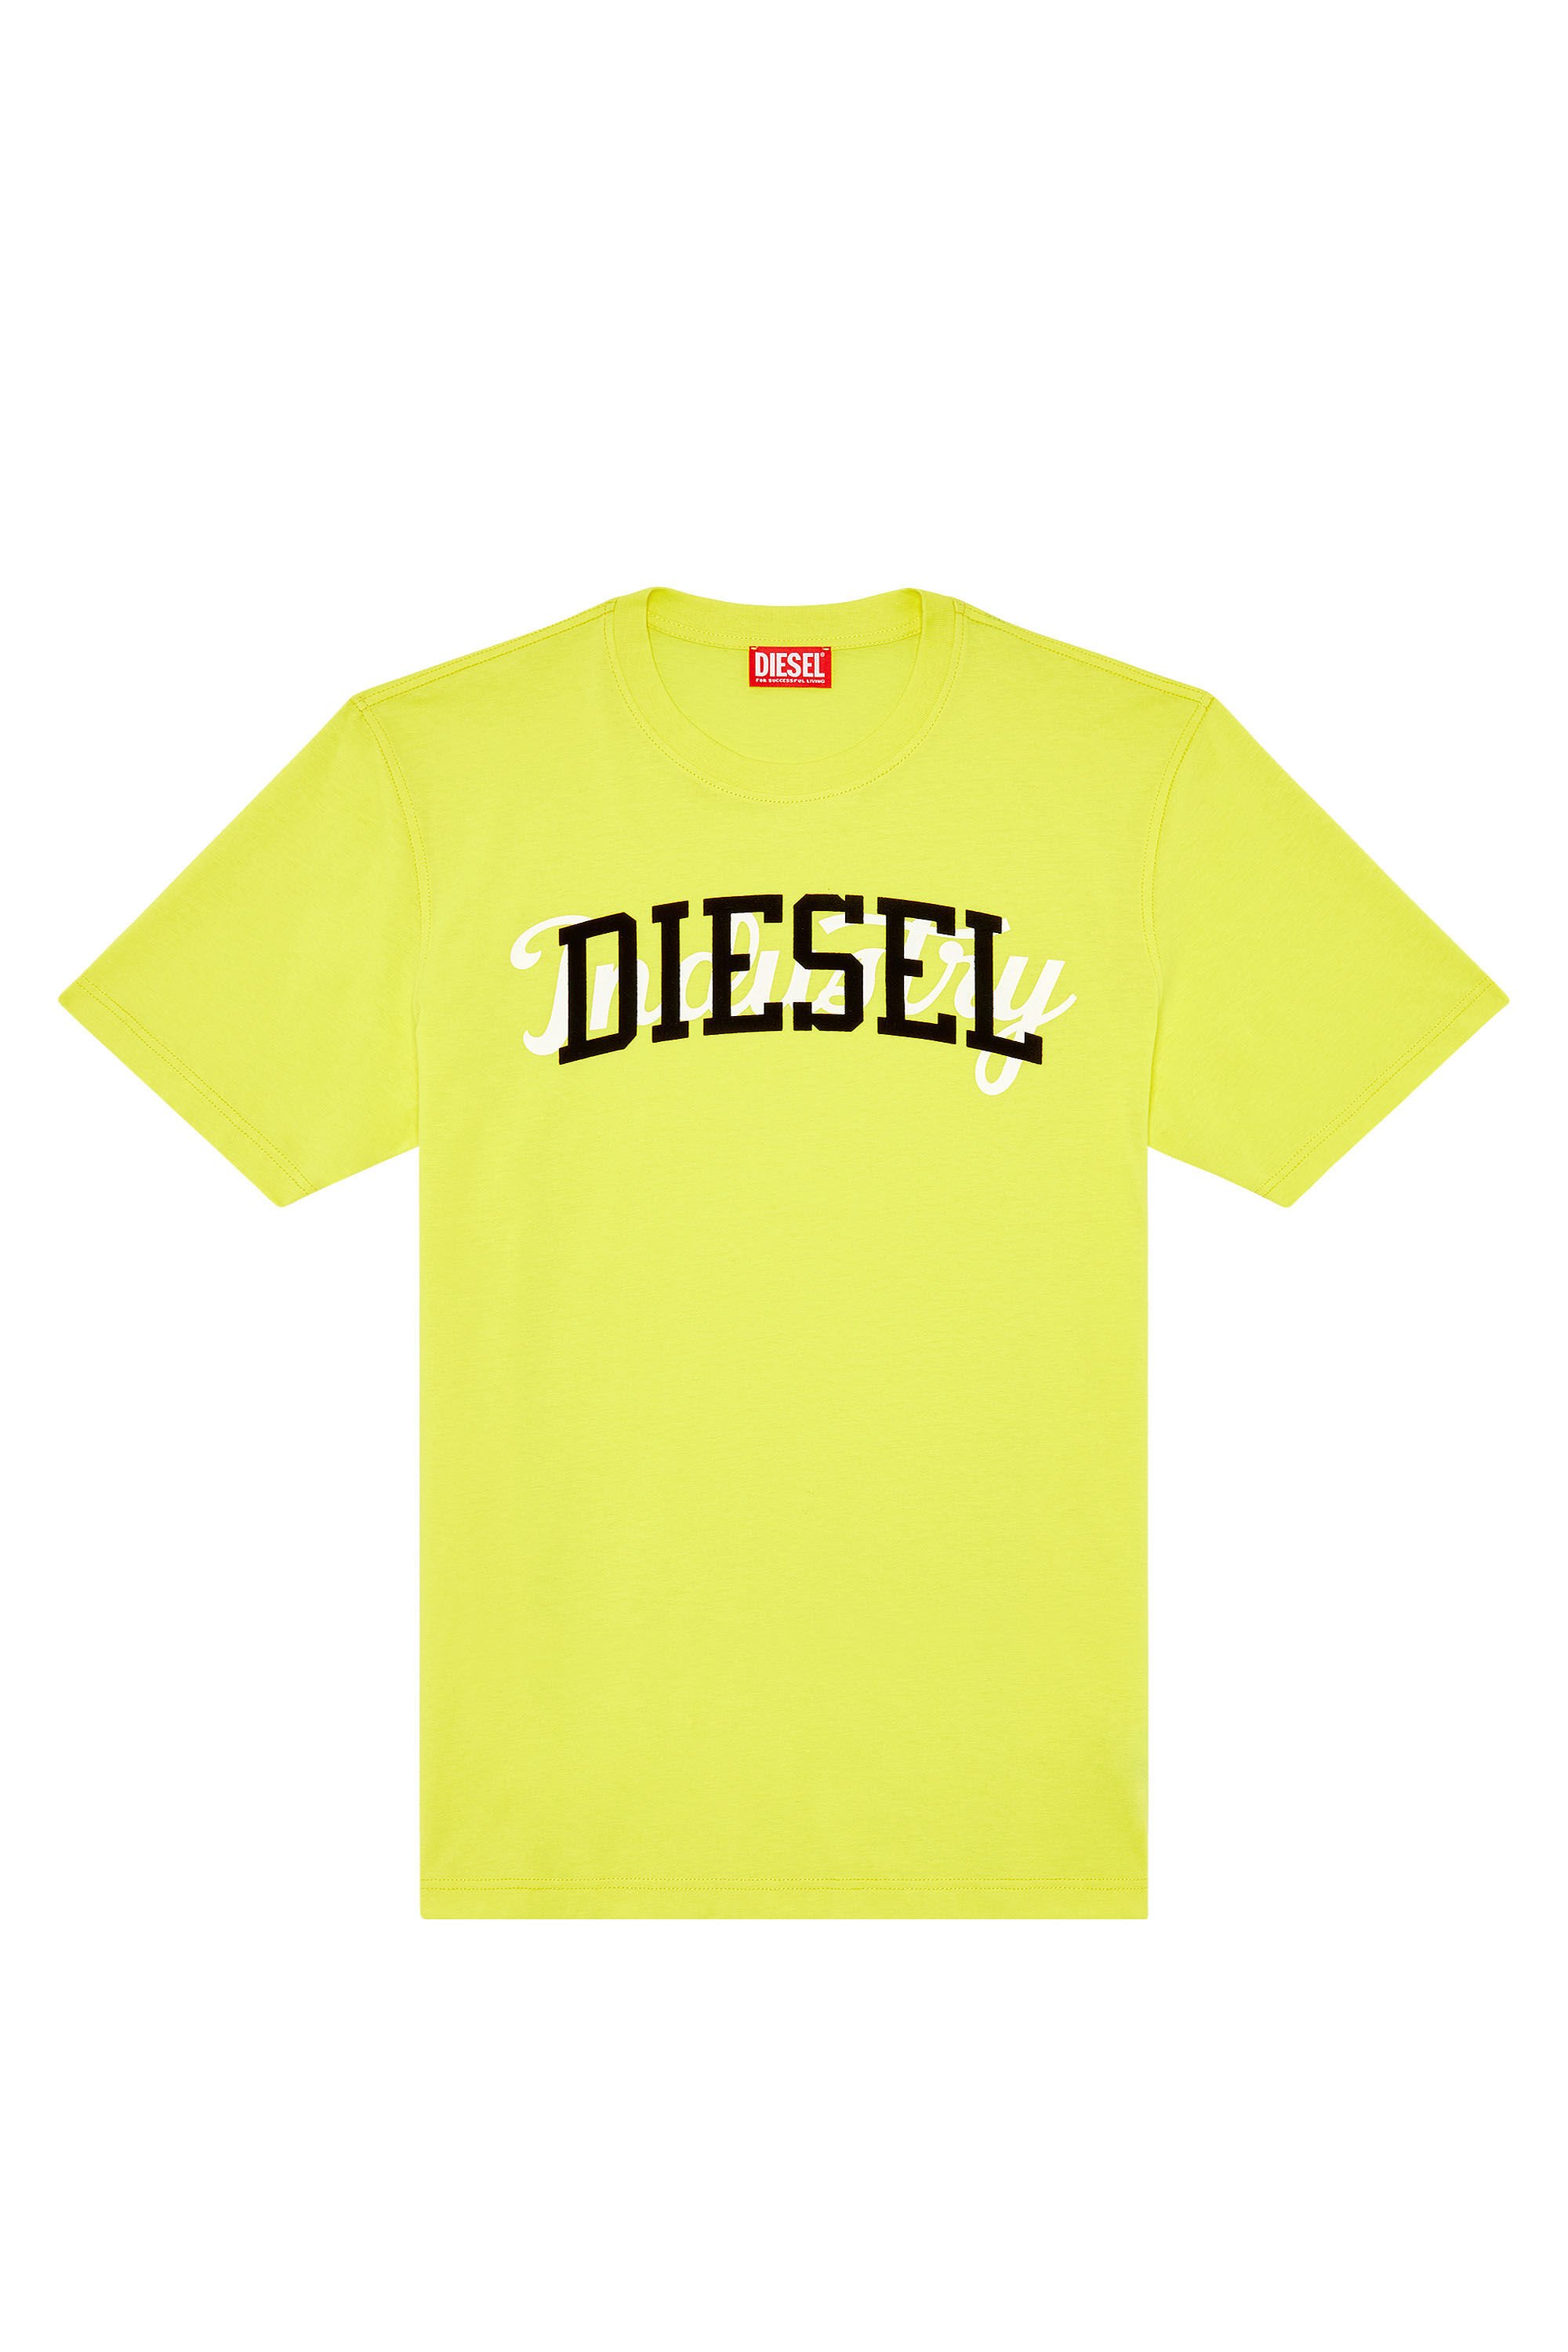 Diesel - T-JUST-N10, Yellow - Image 2